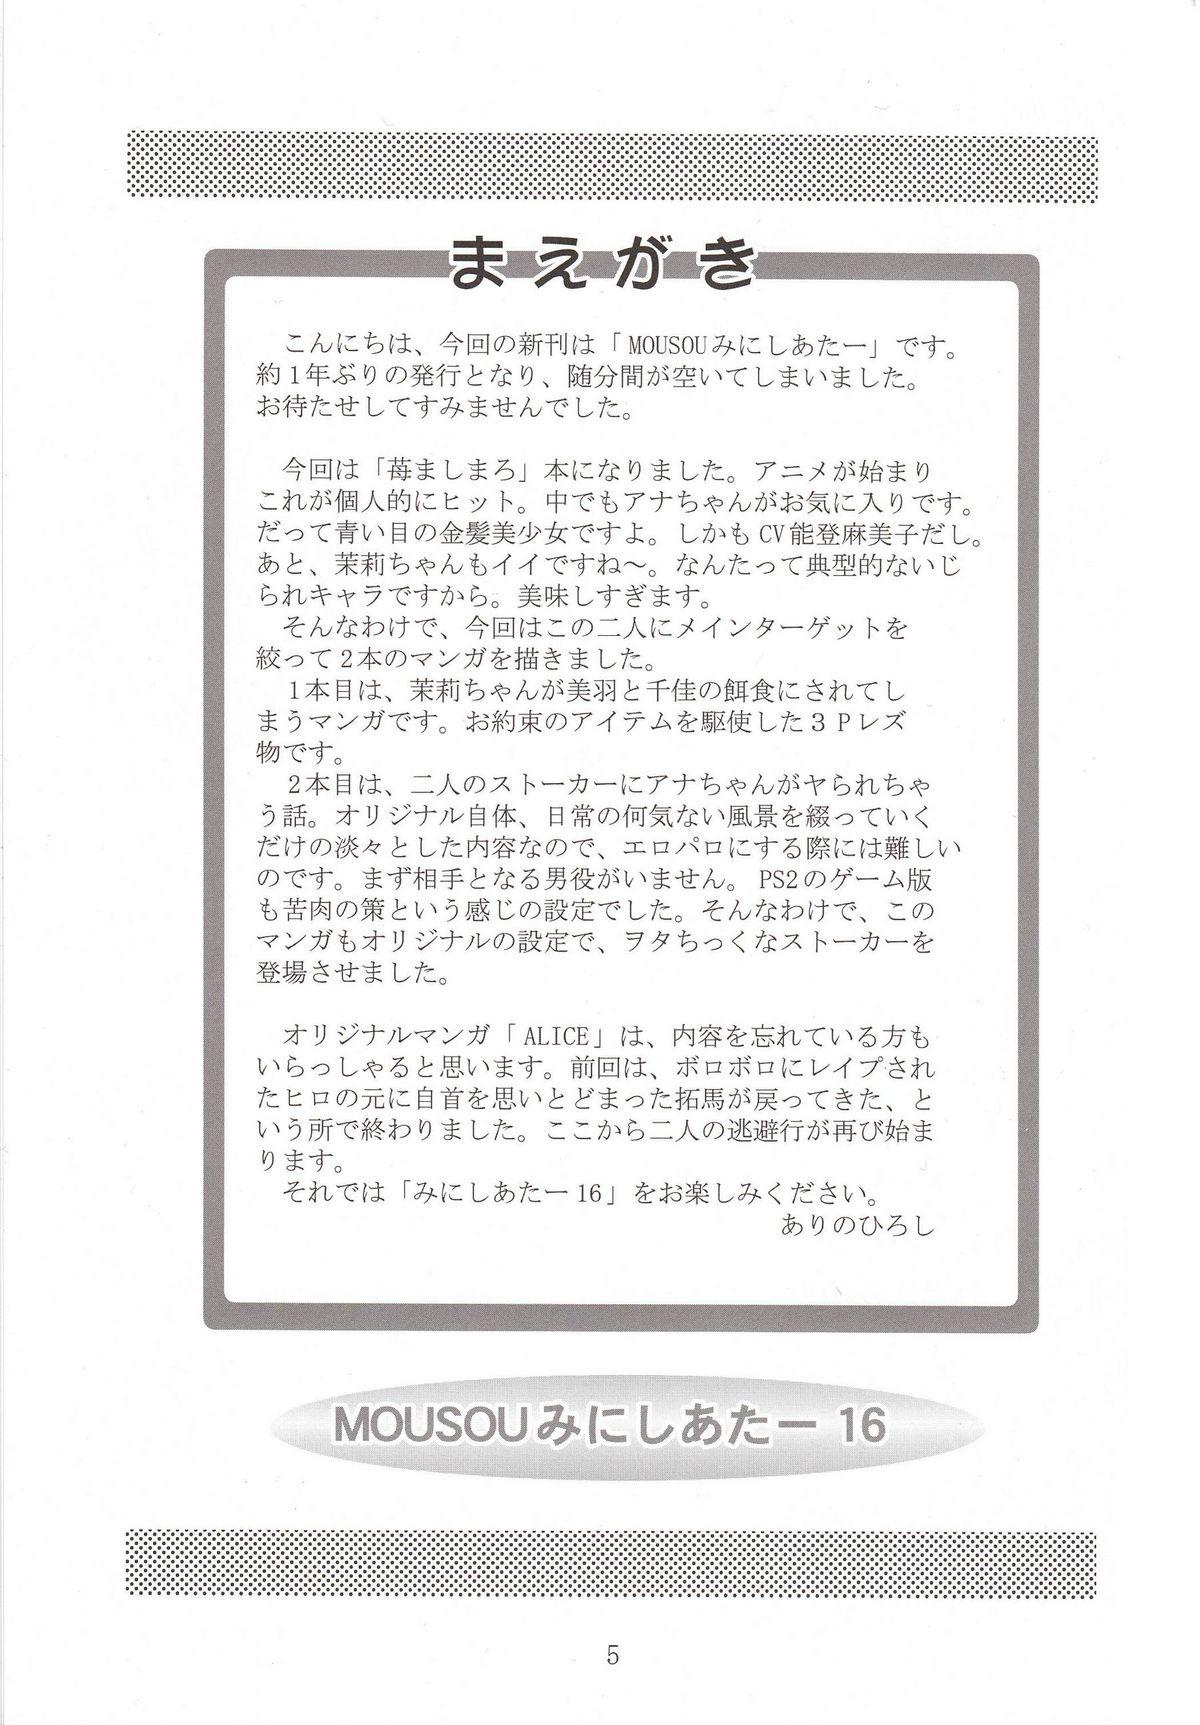 Family Porn Mousou Mini Theater 16 - Ichigo mashimaro Adult - Page 4